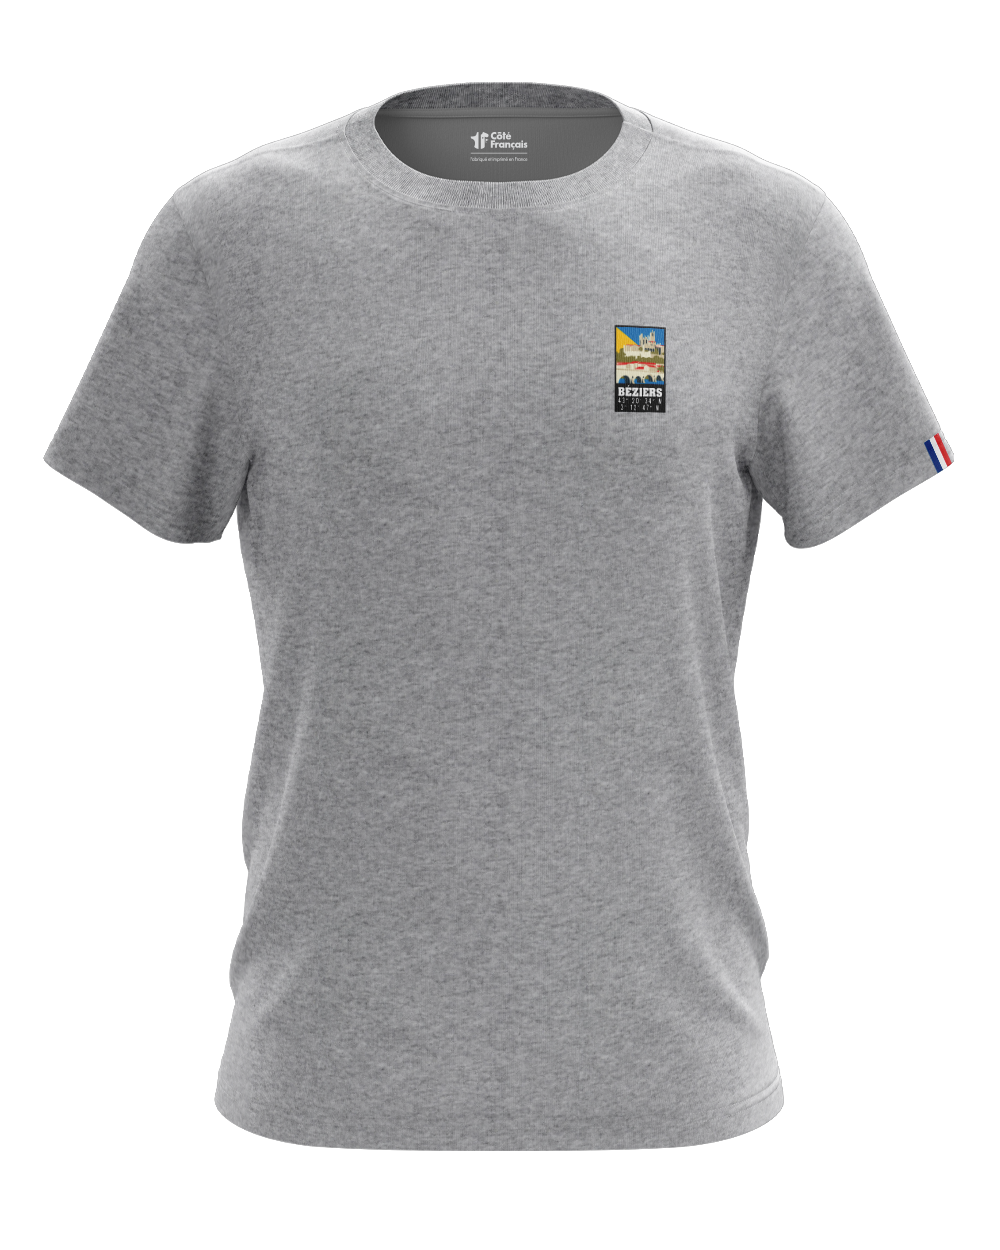 T-Shirt "Ville de Béziers" - gris chiné